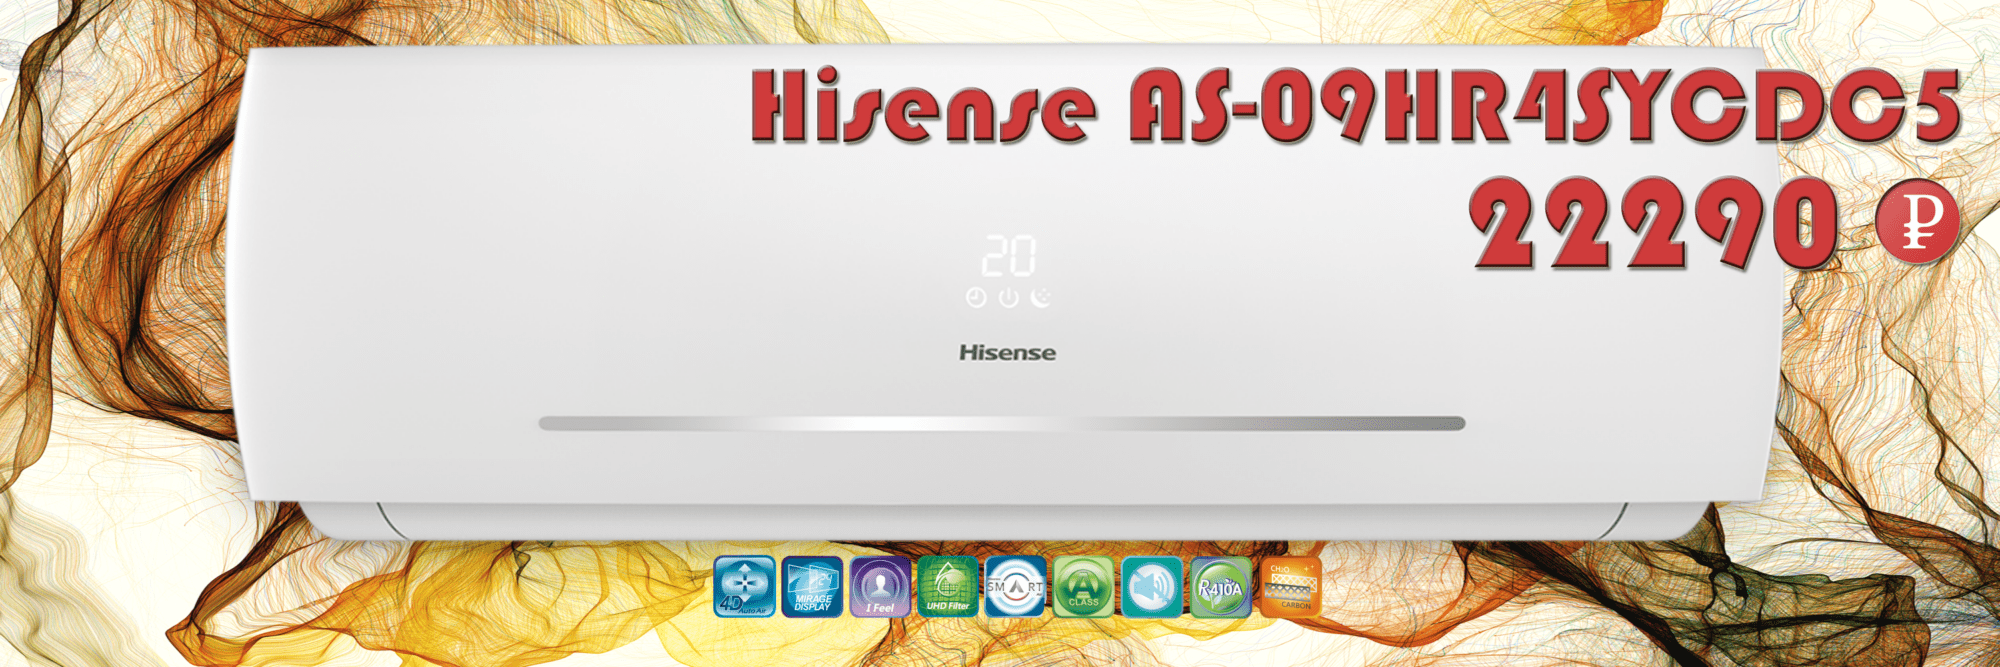 Hisense AS-09HR4SYDDC5